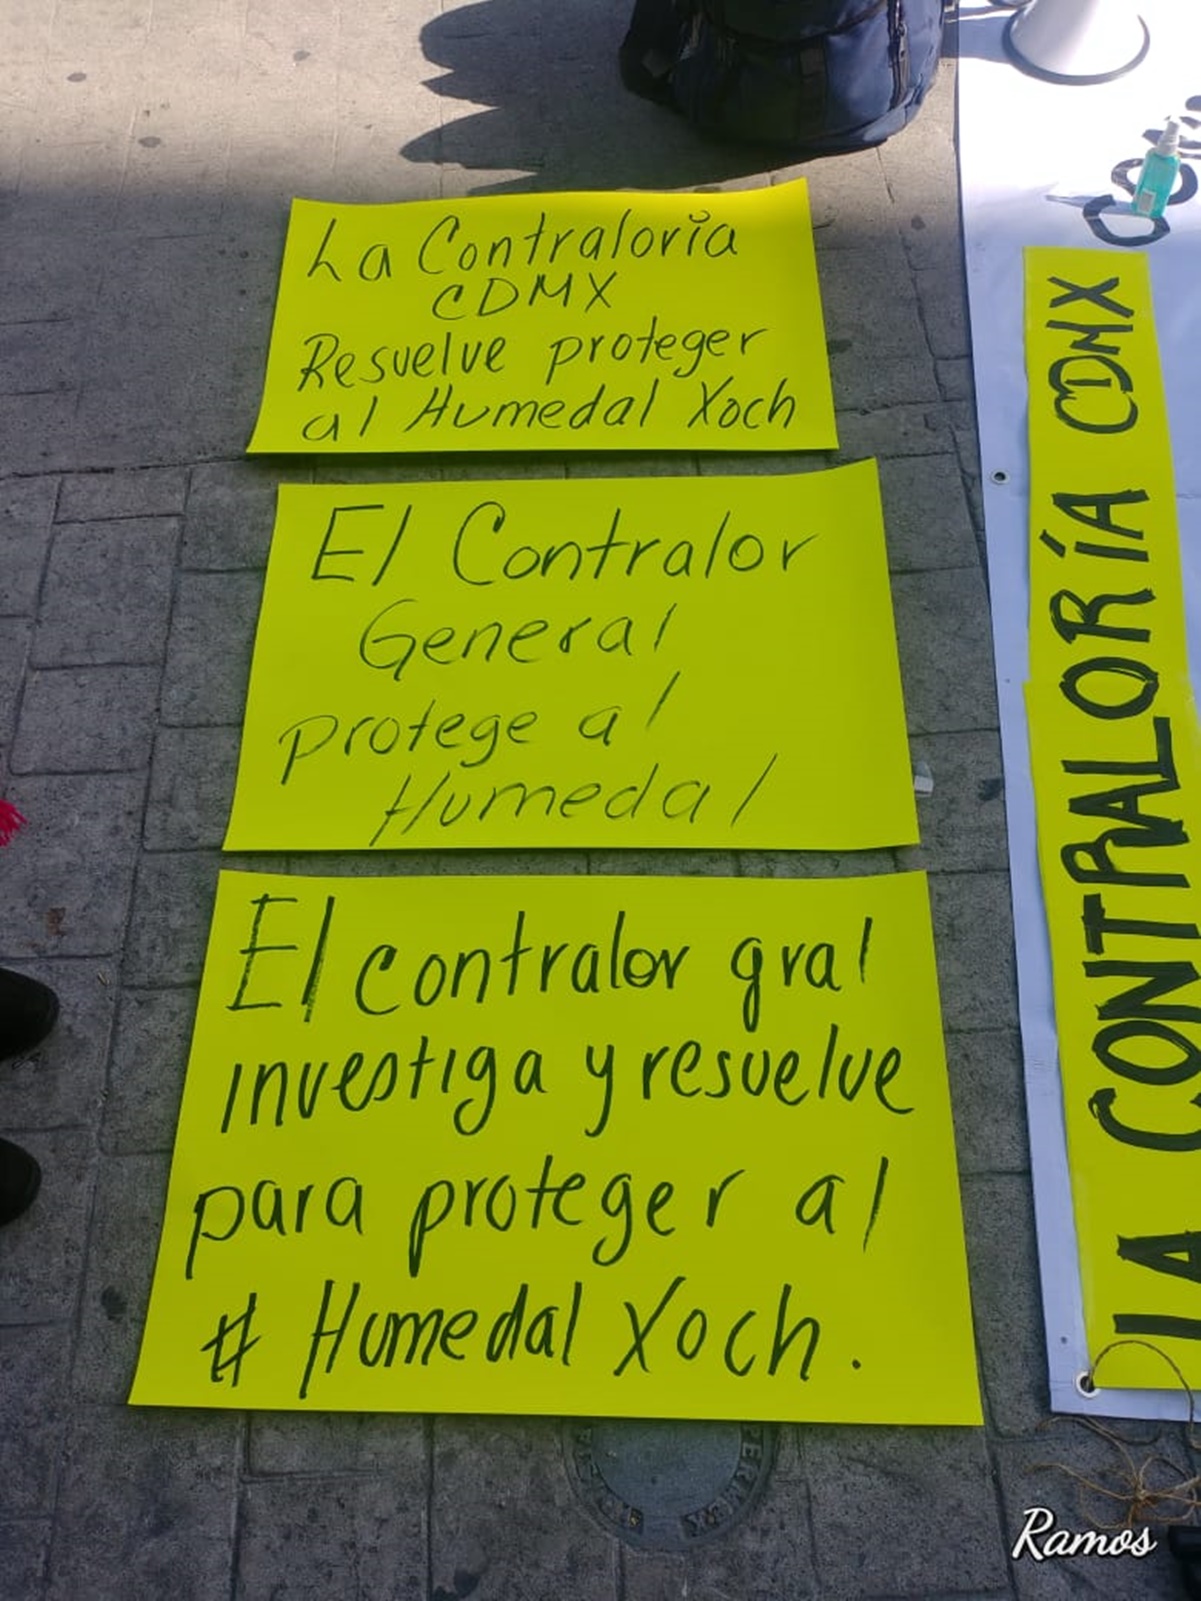 Habitantes de Xochimilco presentan denuncia por daño ambiental a humedal 